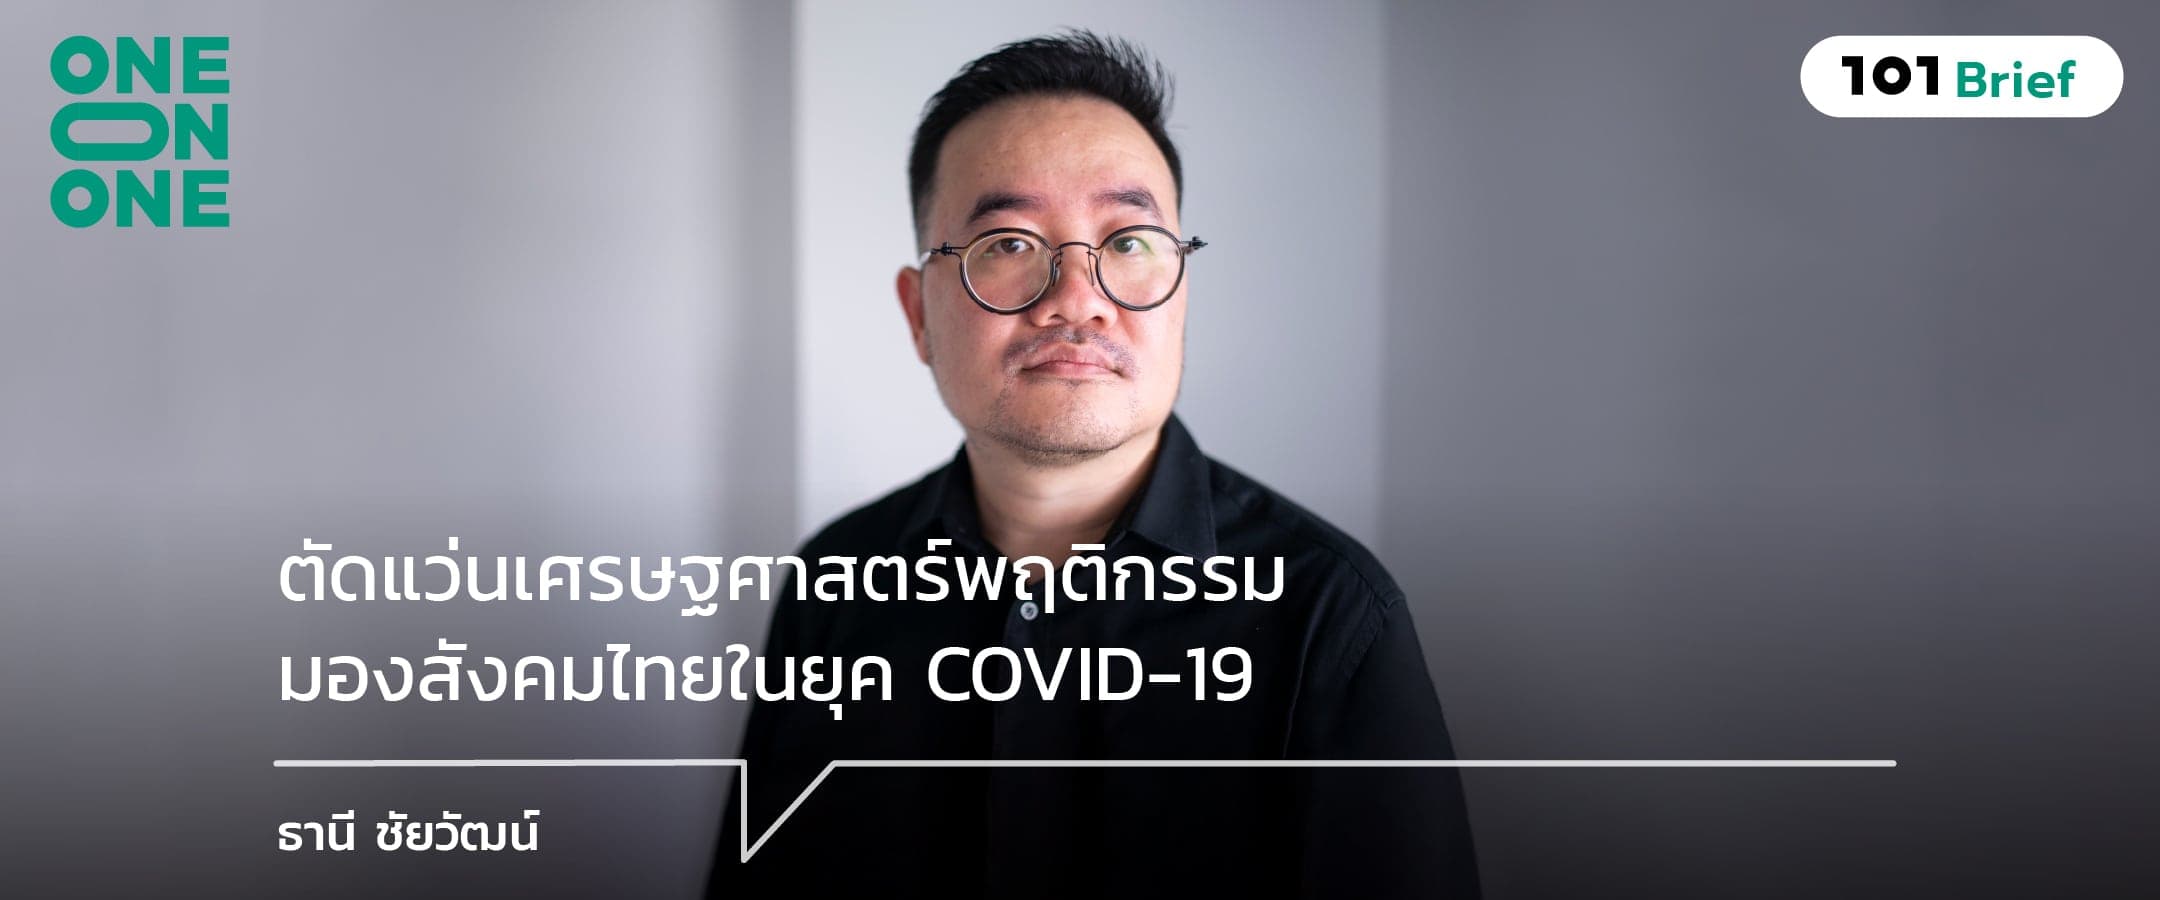 ตัดแว่นเศรษฐศาสตร์พฤติกรรม มองสังคมไทยในยุค COVID-19 กับ ธานี ชัยวัฒน์